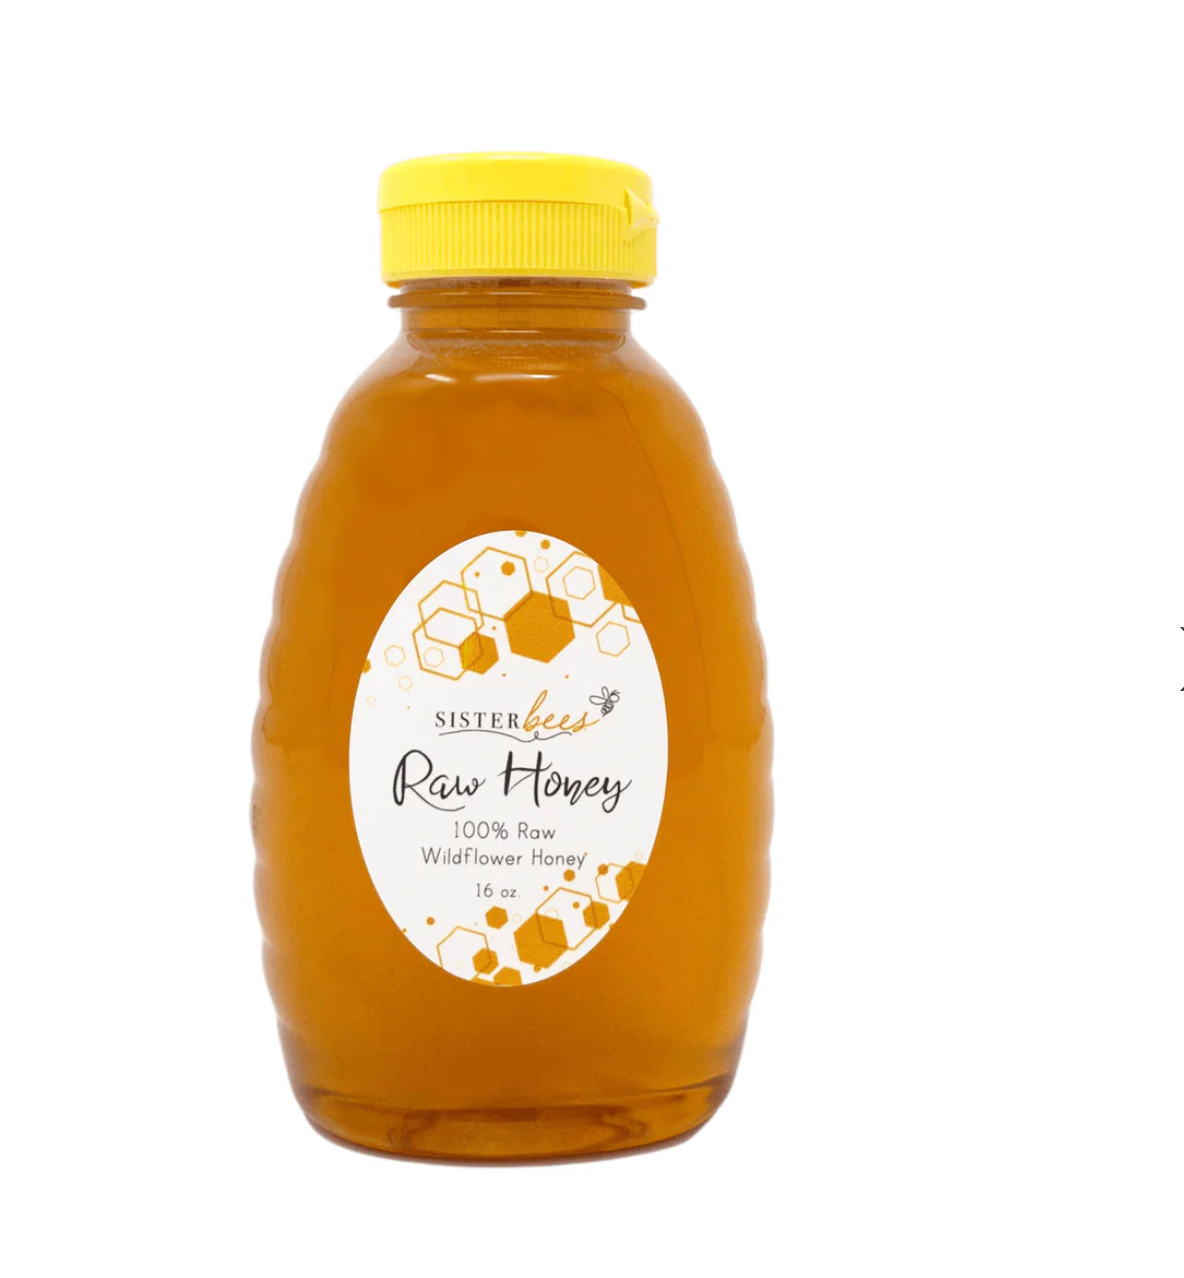 Raw Honey wildflower 16oz.